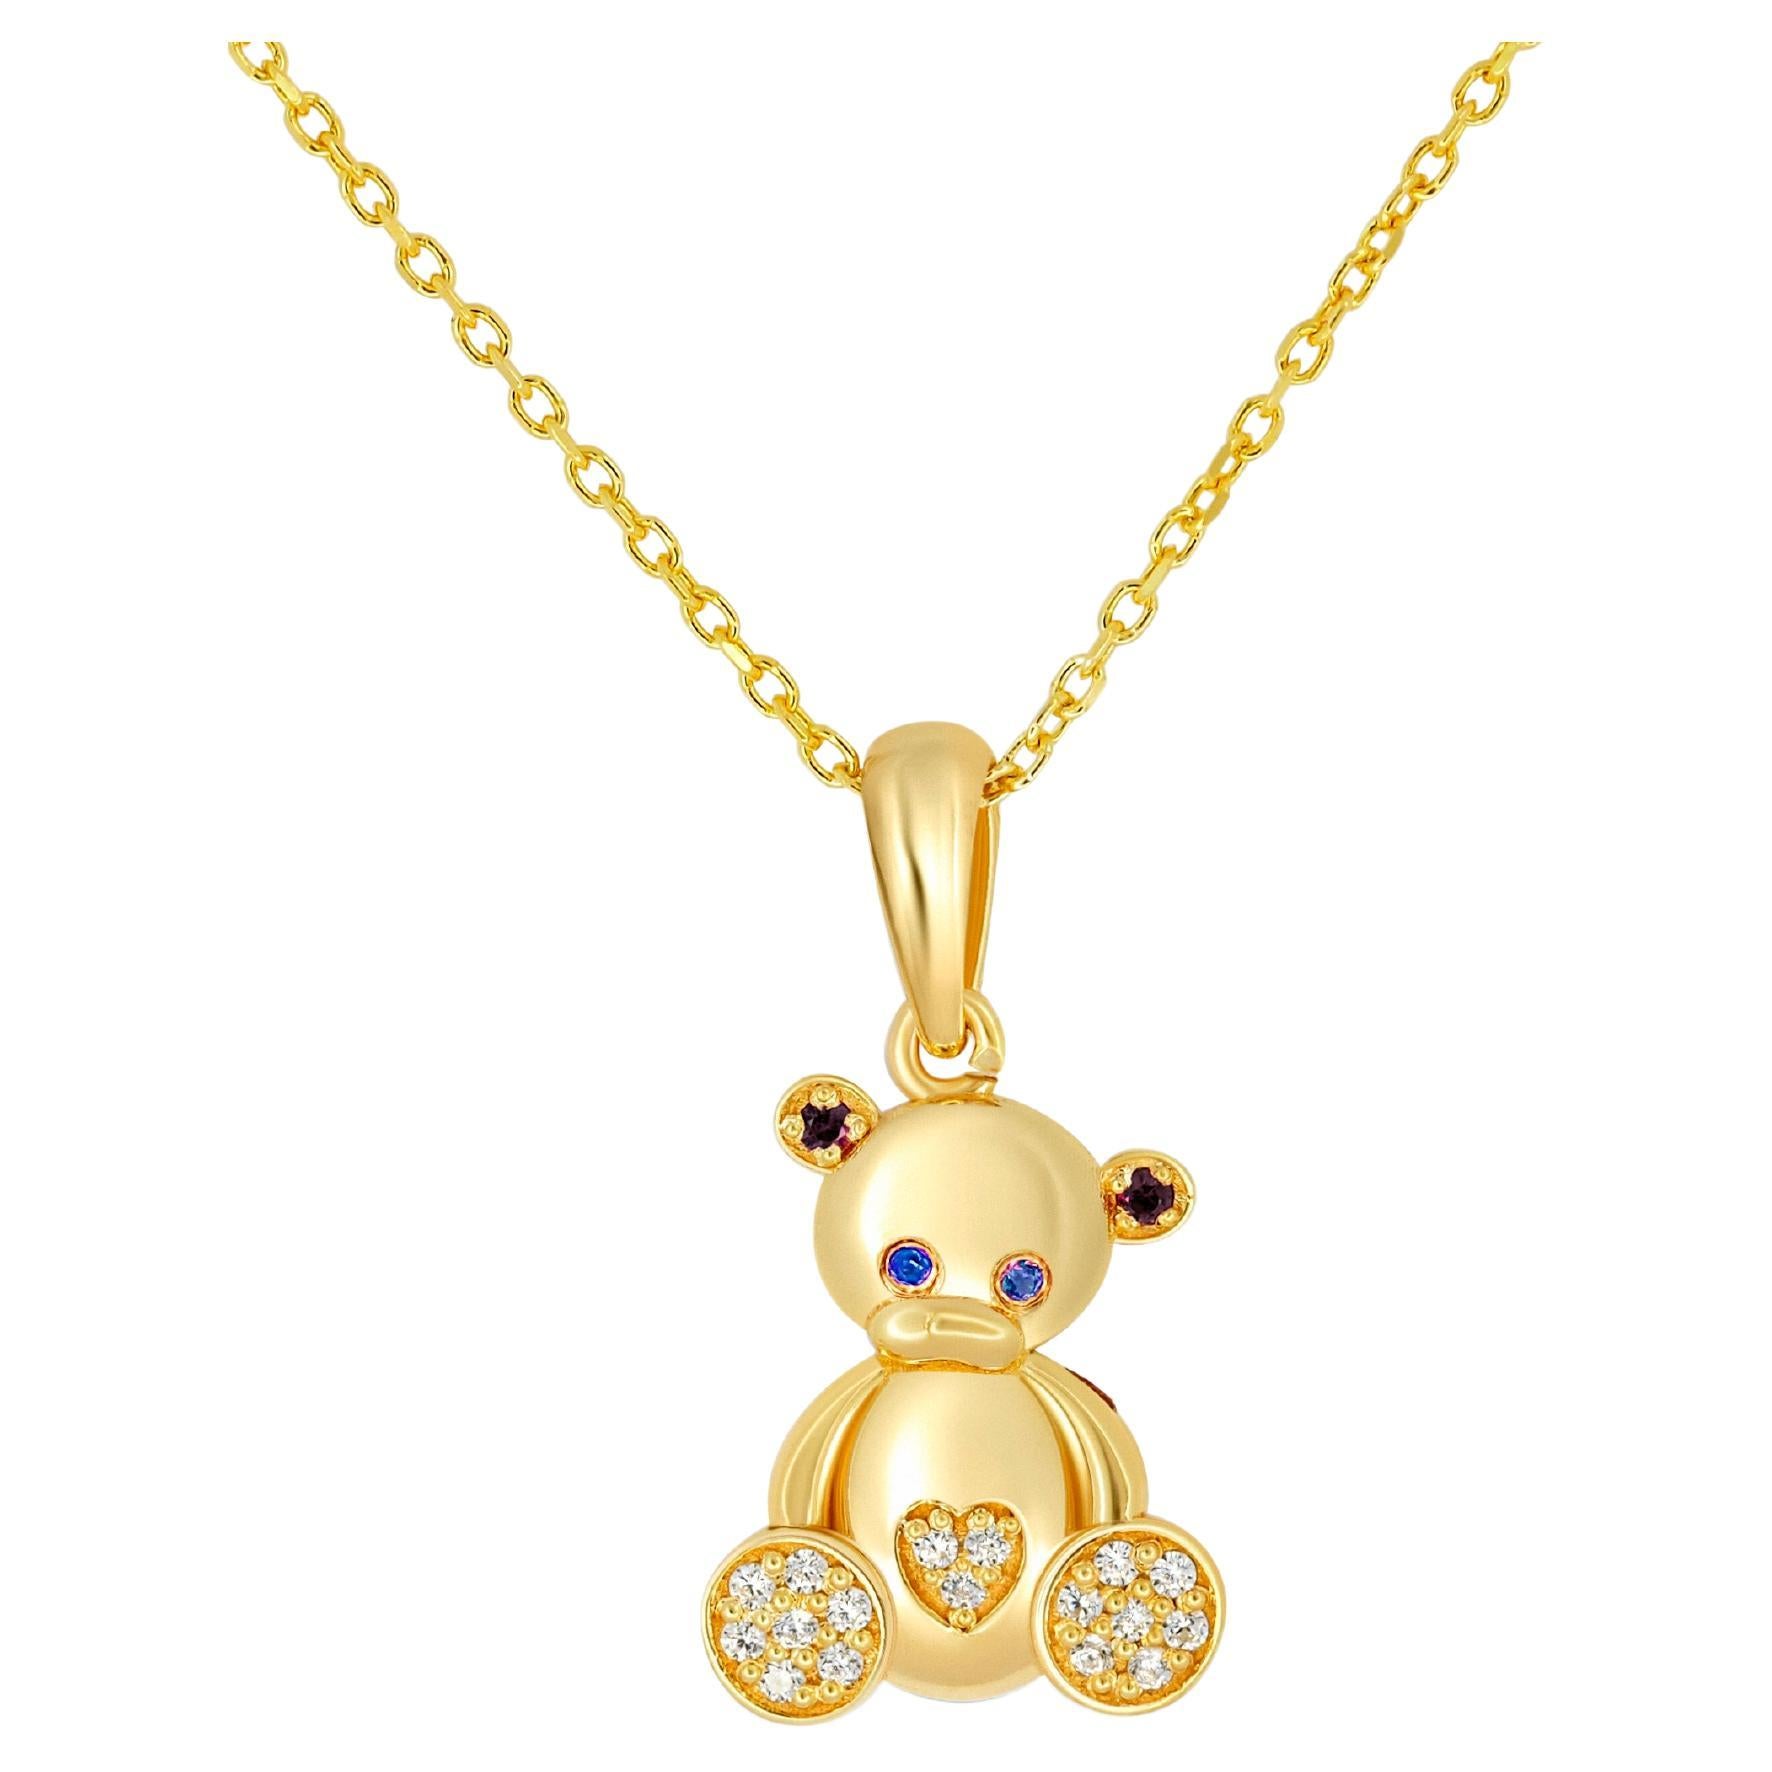 Teddy bear pendant in 14k gold.